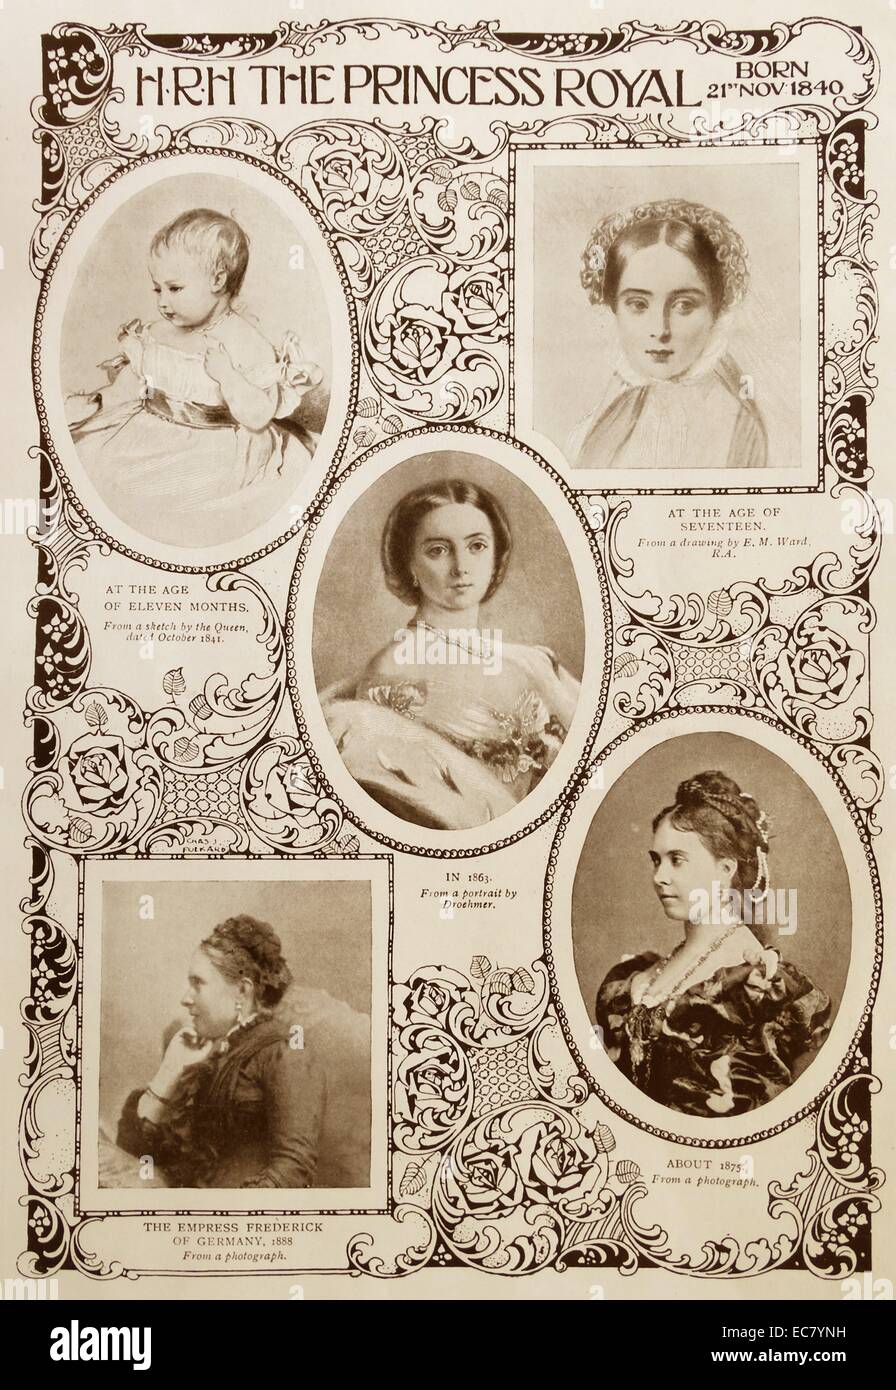 Montage de portraits de Victoria, princesse royale (1840 - 5 août 1901) l'aîné des enfants de la reine Victoria du Royaume-Uni et du Prince Albert. Elle est devenue l'Impératrice allemande par le mariage à l'empereur allemand Frédéric III. Banque D'Images